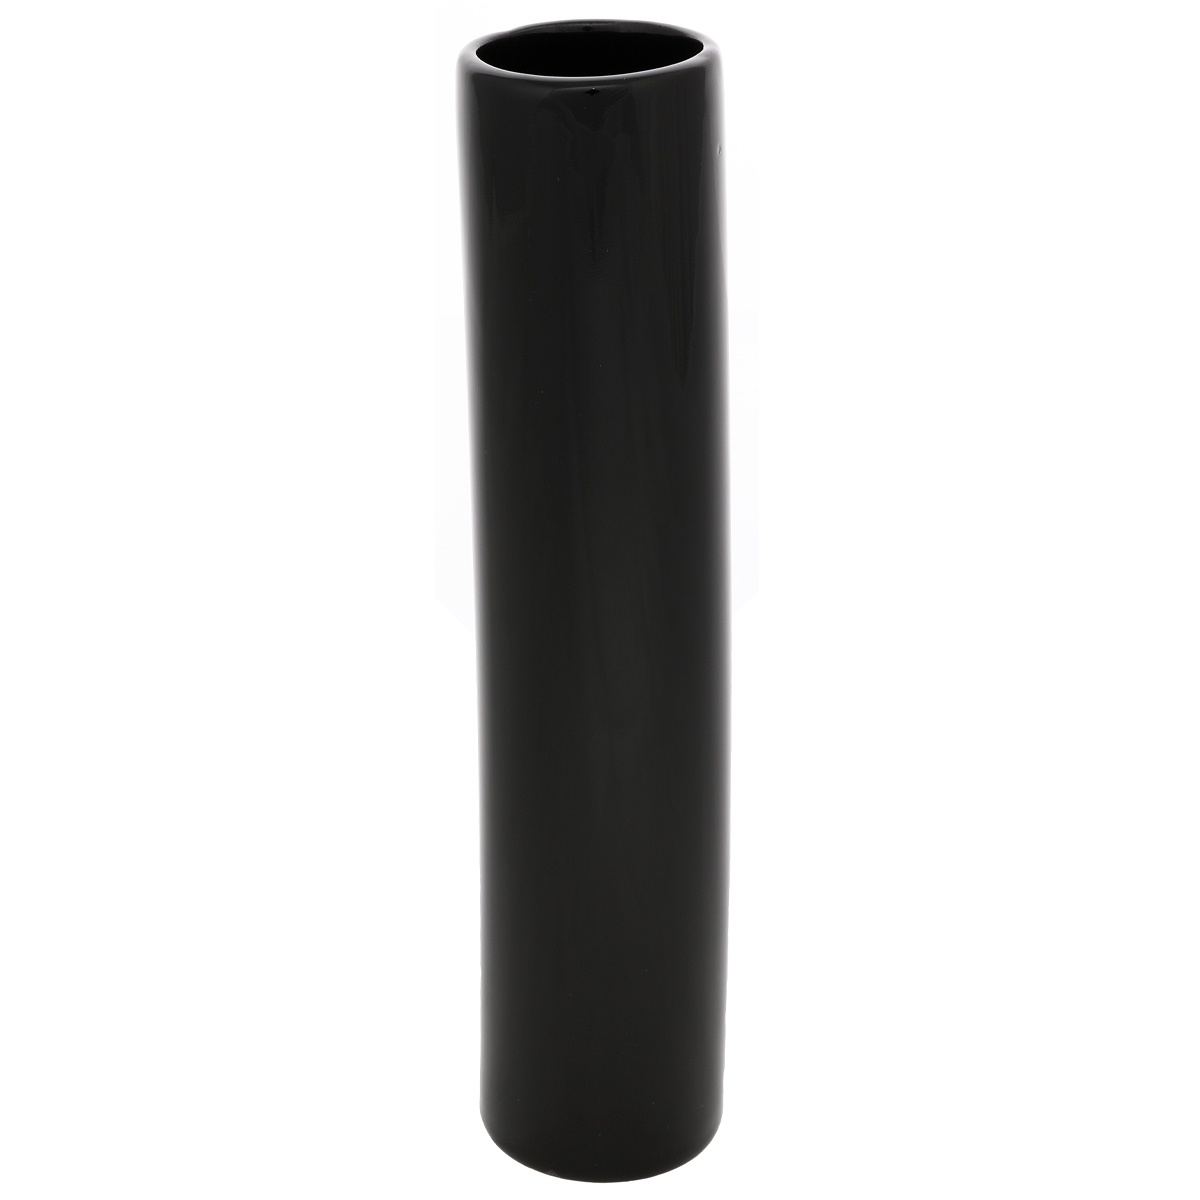 Poza Vaza ceramica Tube, 5 x 24 x 5 cm, negru